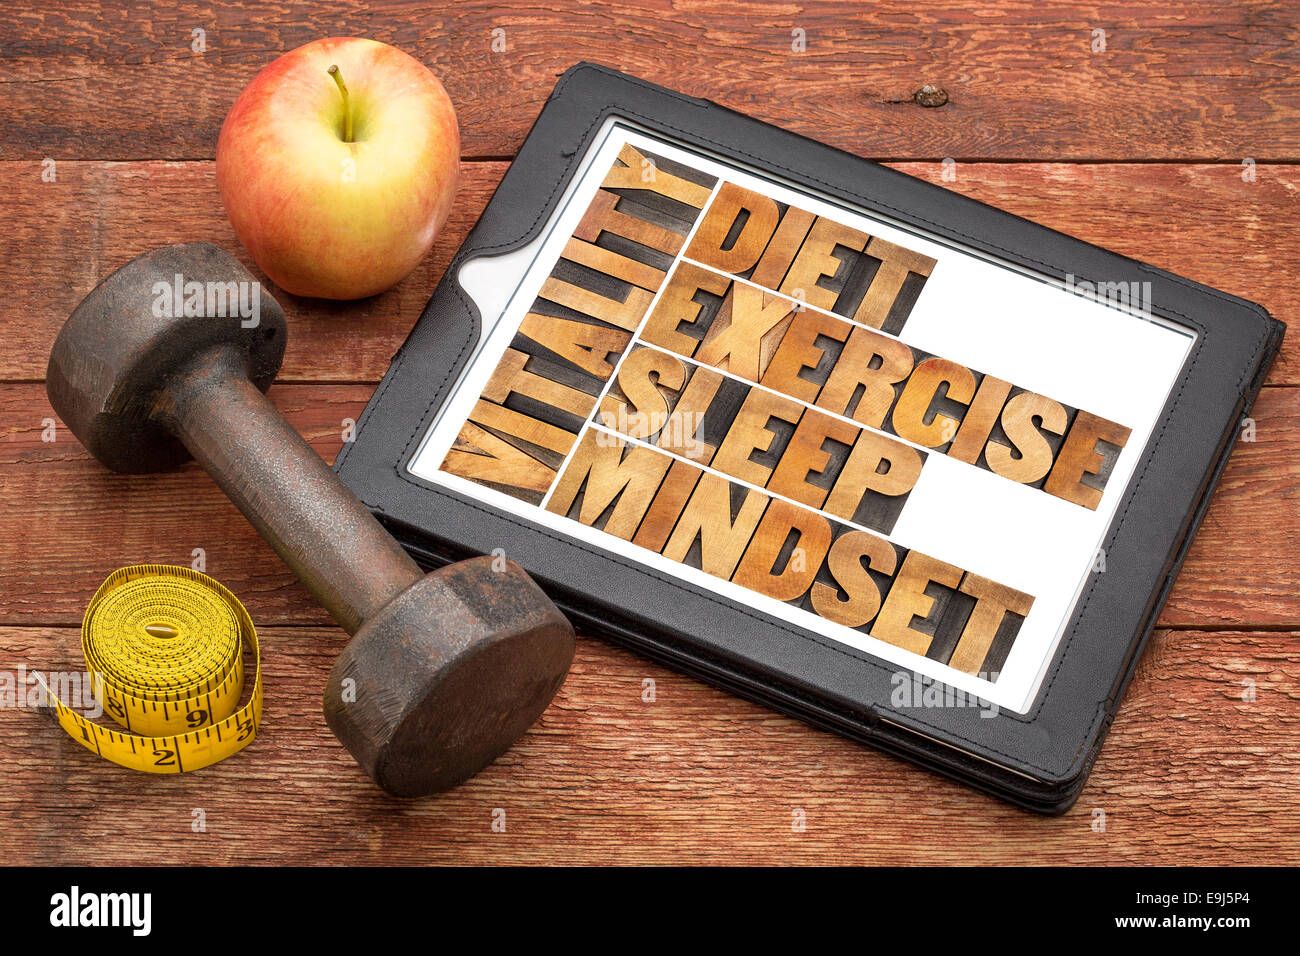 L'alimentation, le sommeil, l'exercice et d'esprit - Vitalité - concept abstrait dans la typographie vintage type de bois sur une tablette numérique Banque D'Images